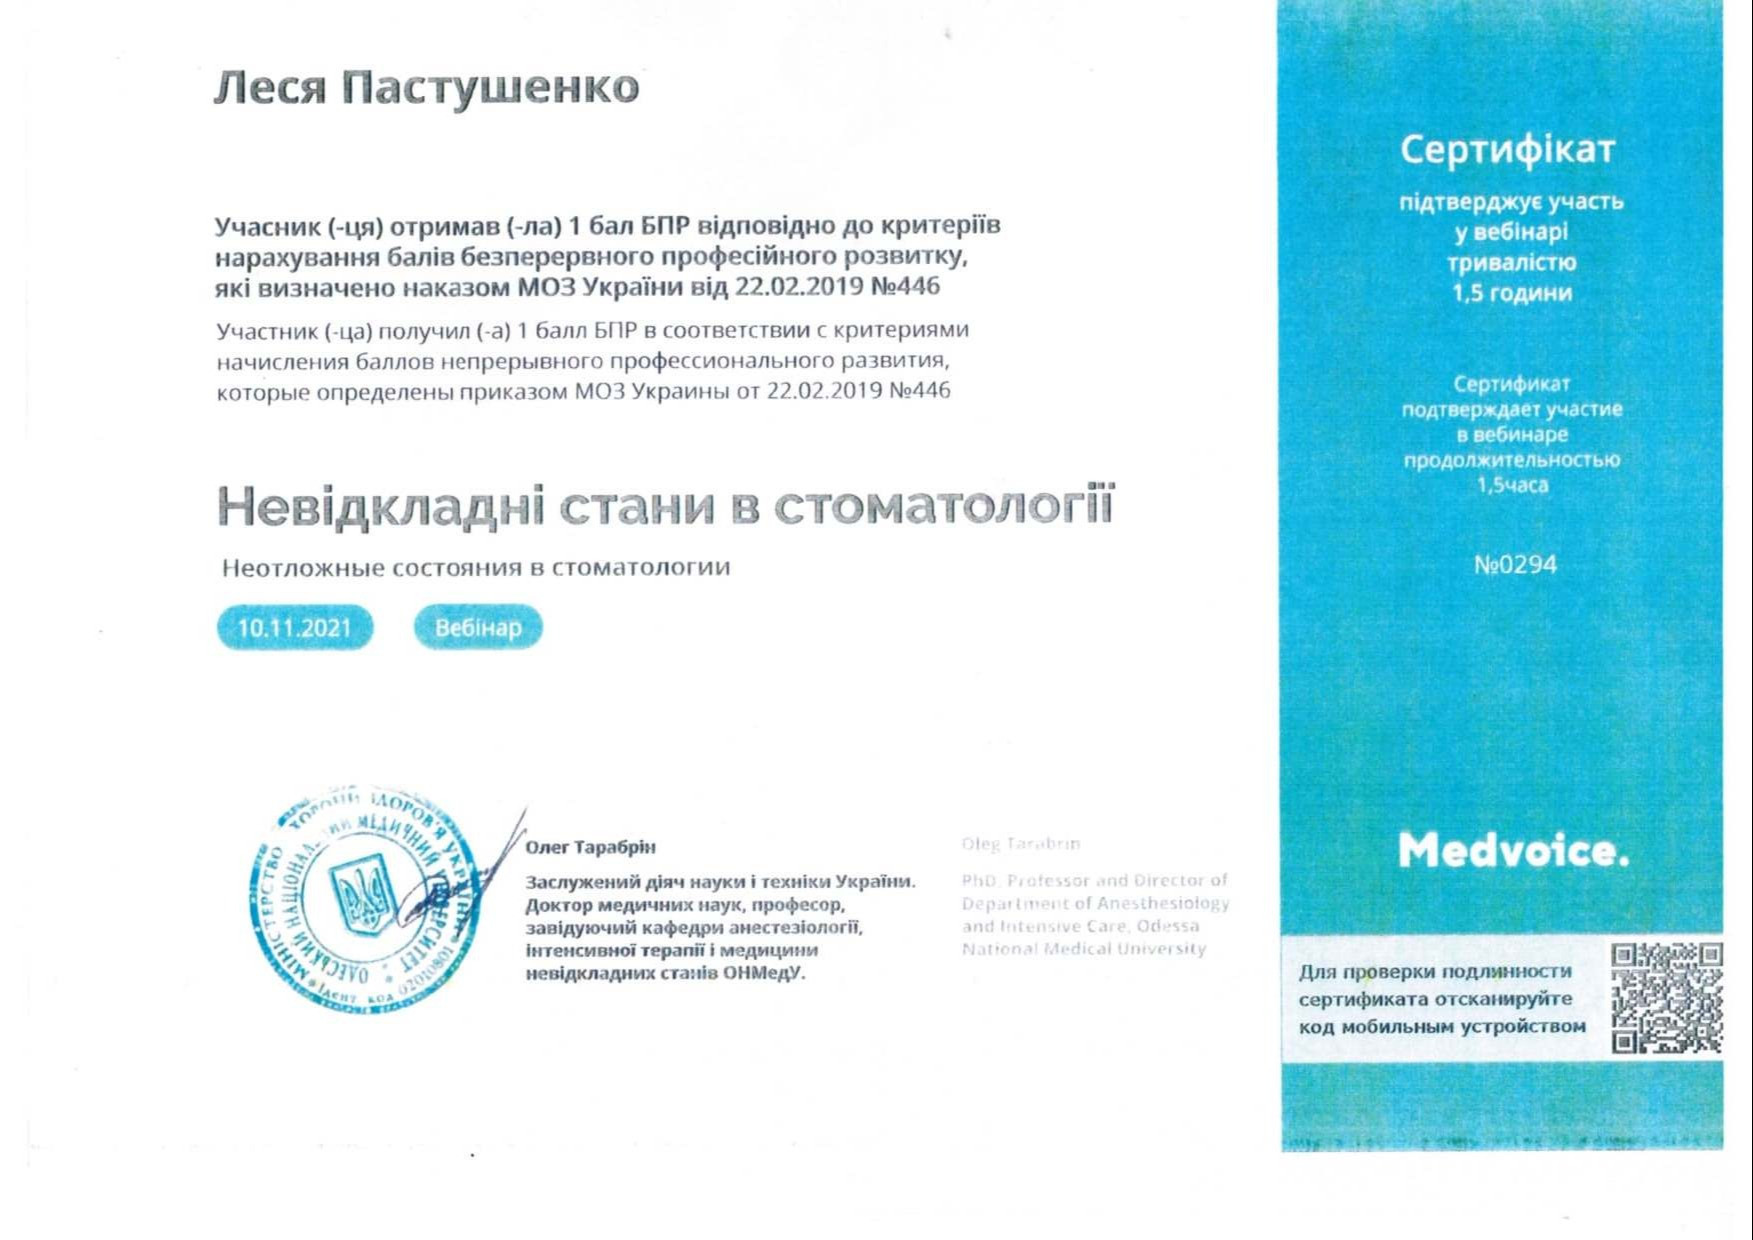 Сертификат об участии в вебинаре